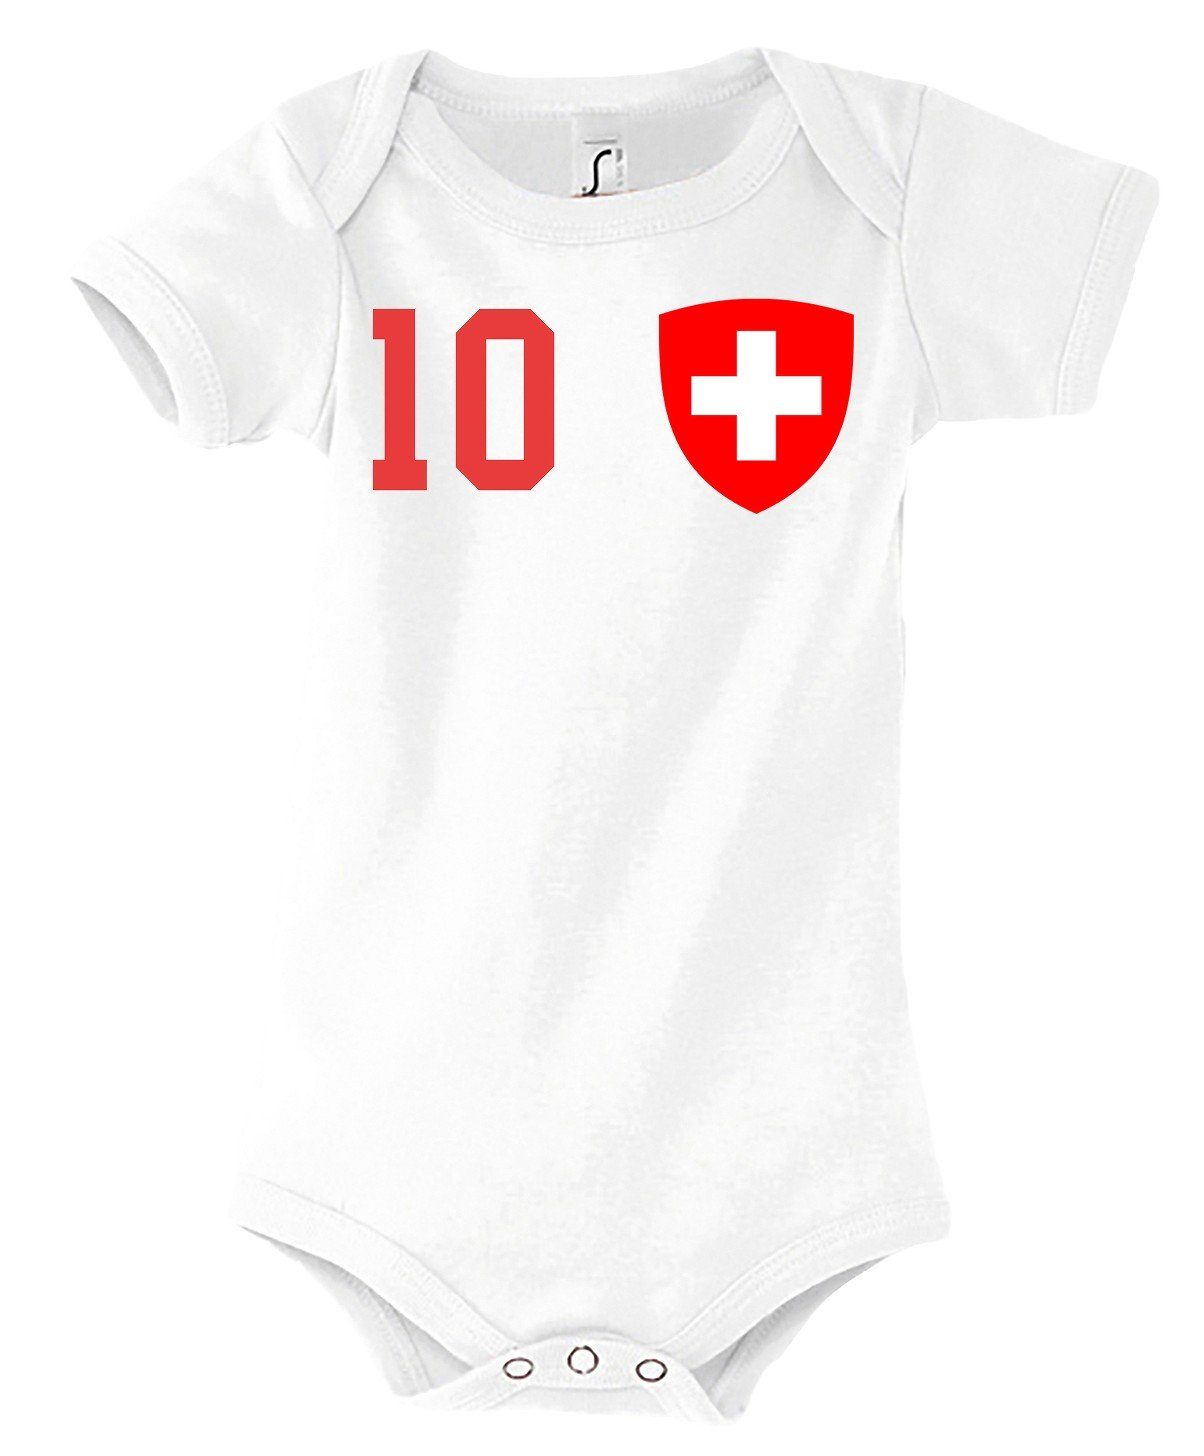 Youth Designz Kurzarmbody Schweiz Kinder Baby Body Strampler mit trendigem Motiv Weiß | Shirtbodies